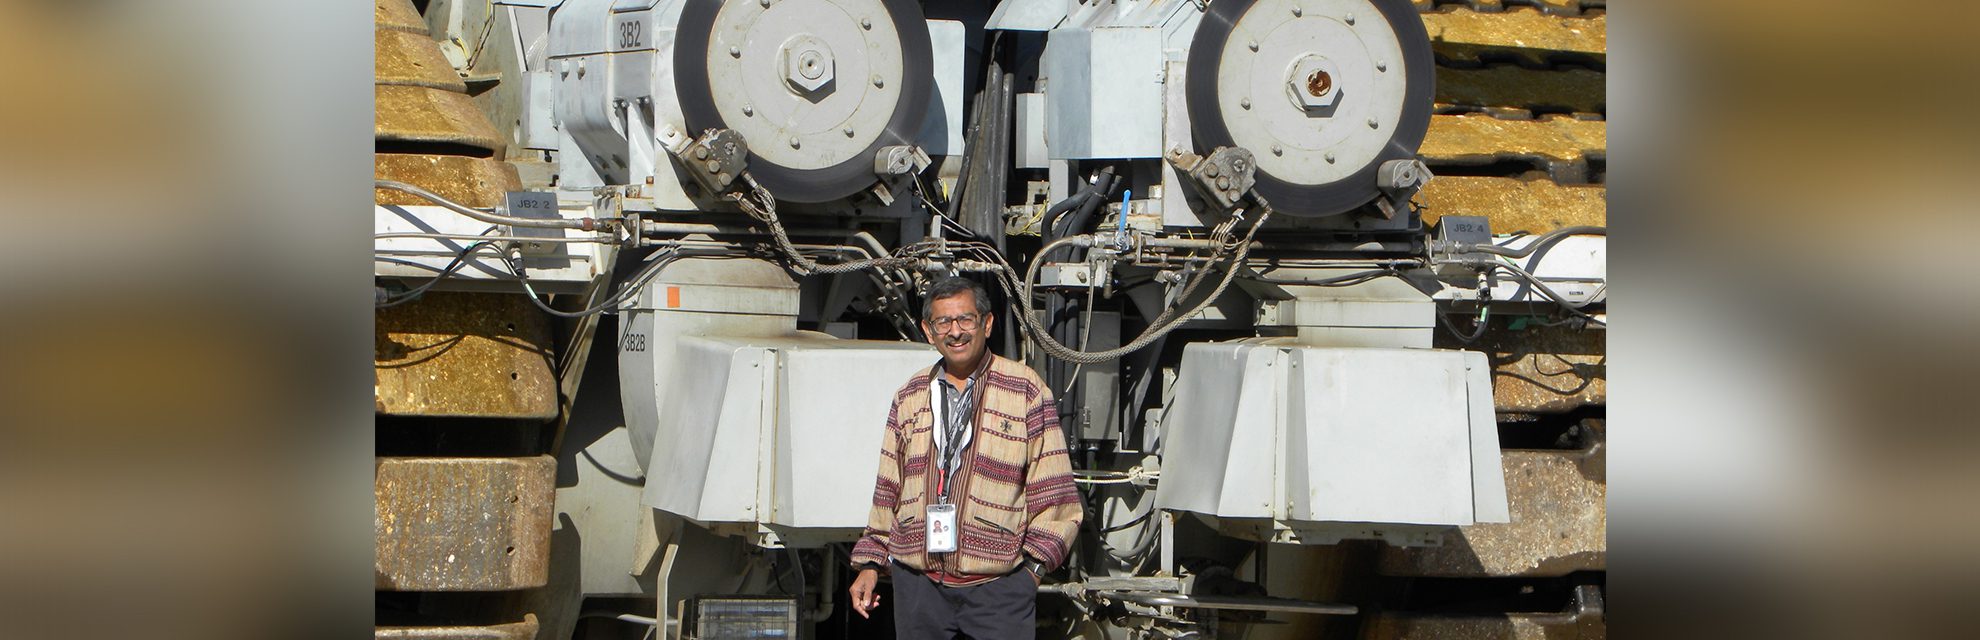 အာကာသယာဉ်မှူး ဖန်တီးသူ- ဒေါက်တာ Ravi Margasahayam သည် လူသားပေါင်း ၇၀၀ ကျော်ကို အာကာသထဲသို့ စေလွှတ်ခဲ့သူ၊